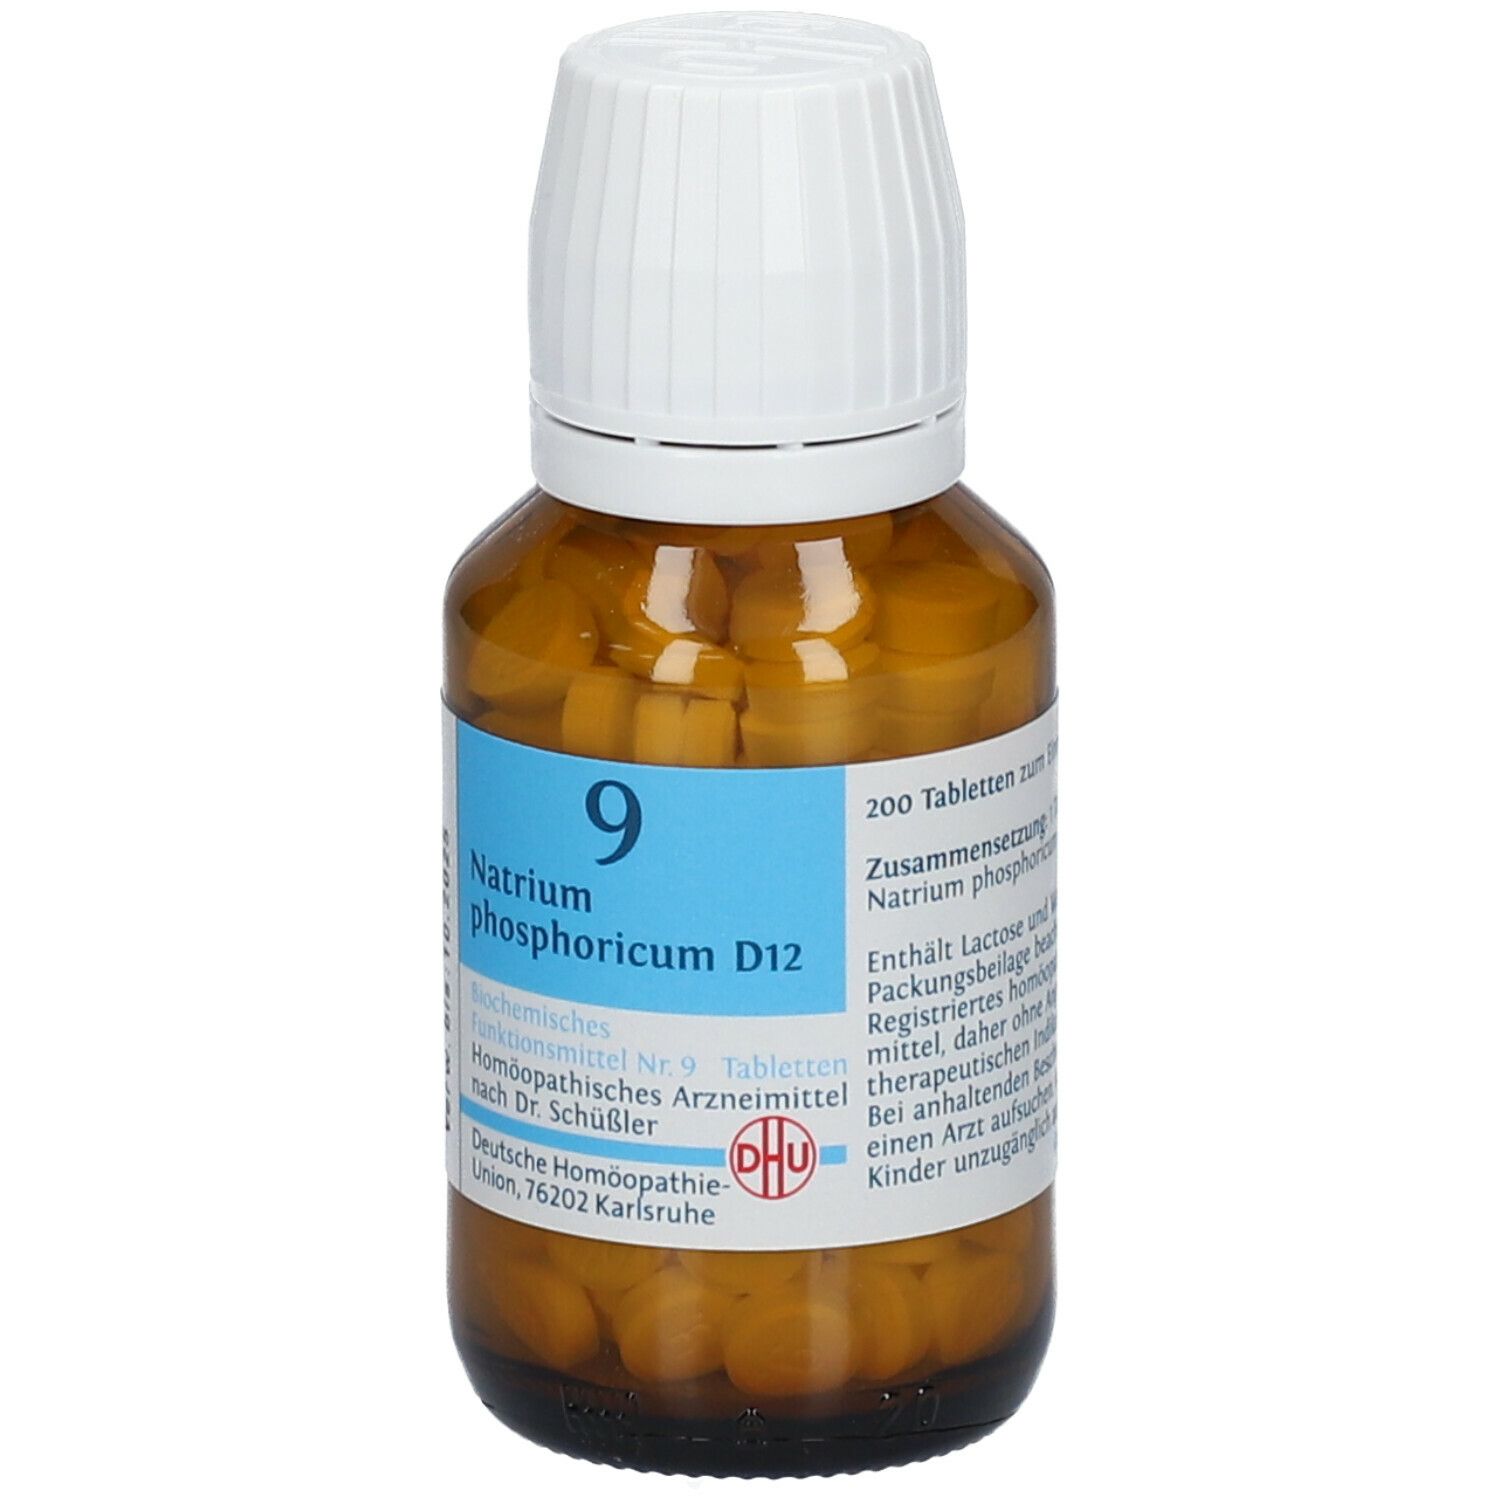 DHU Schüßler-Salz Nr. 9® Natrium phosphoricum D12